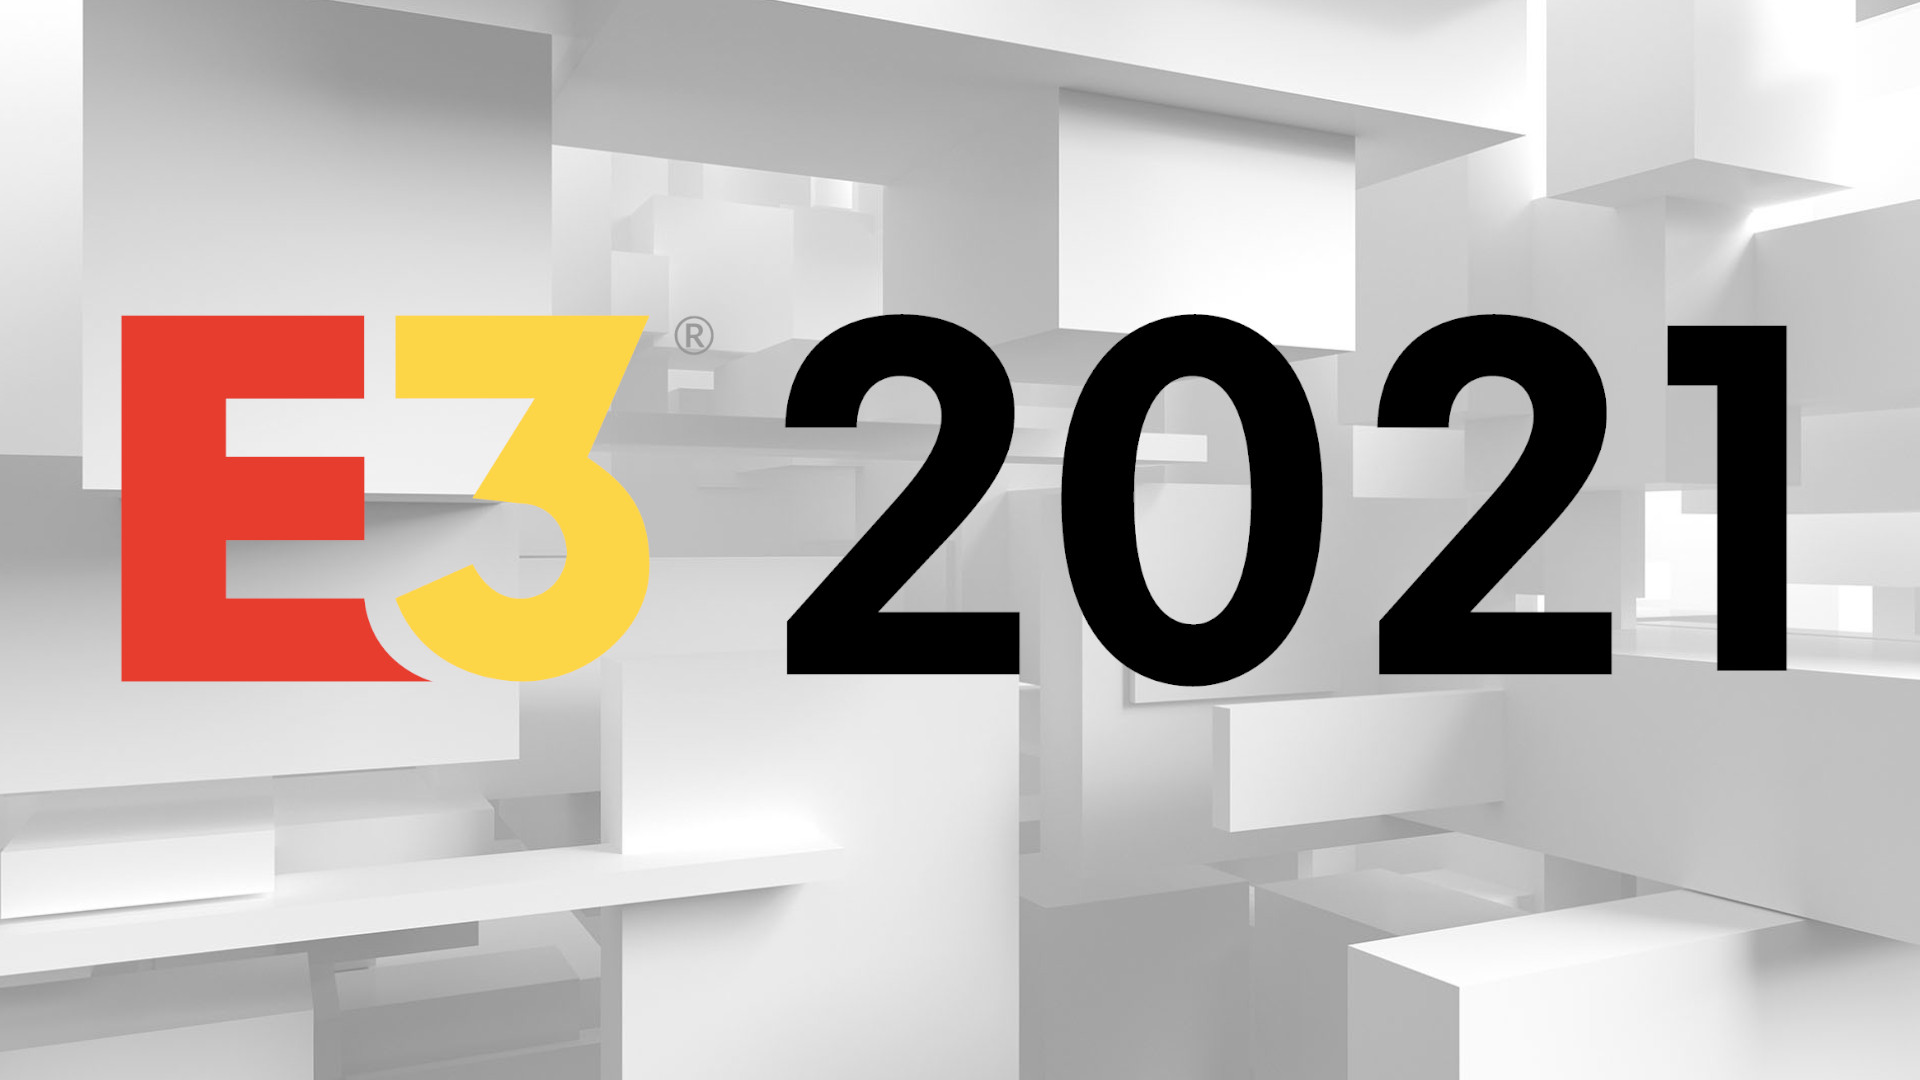 Orari i E3 2021 – dhe çdo ngjarje e industrisë së lojërave të konfirmuara për vitin 2021